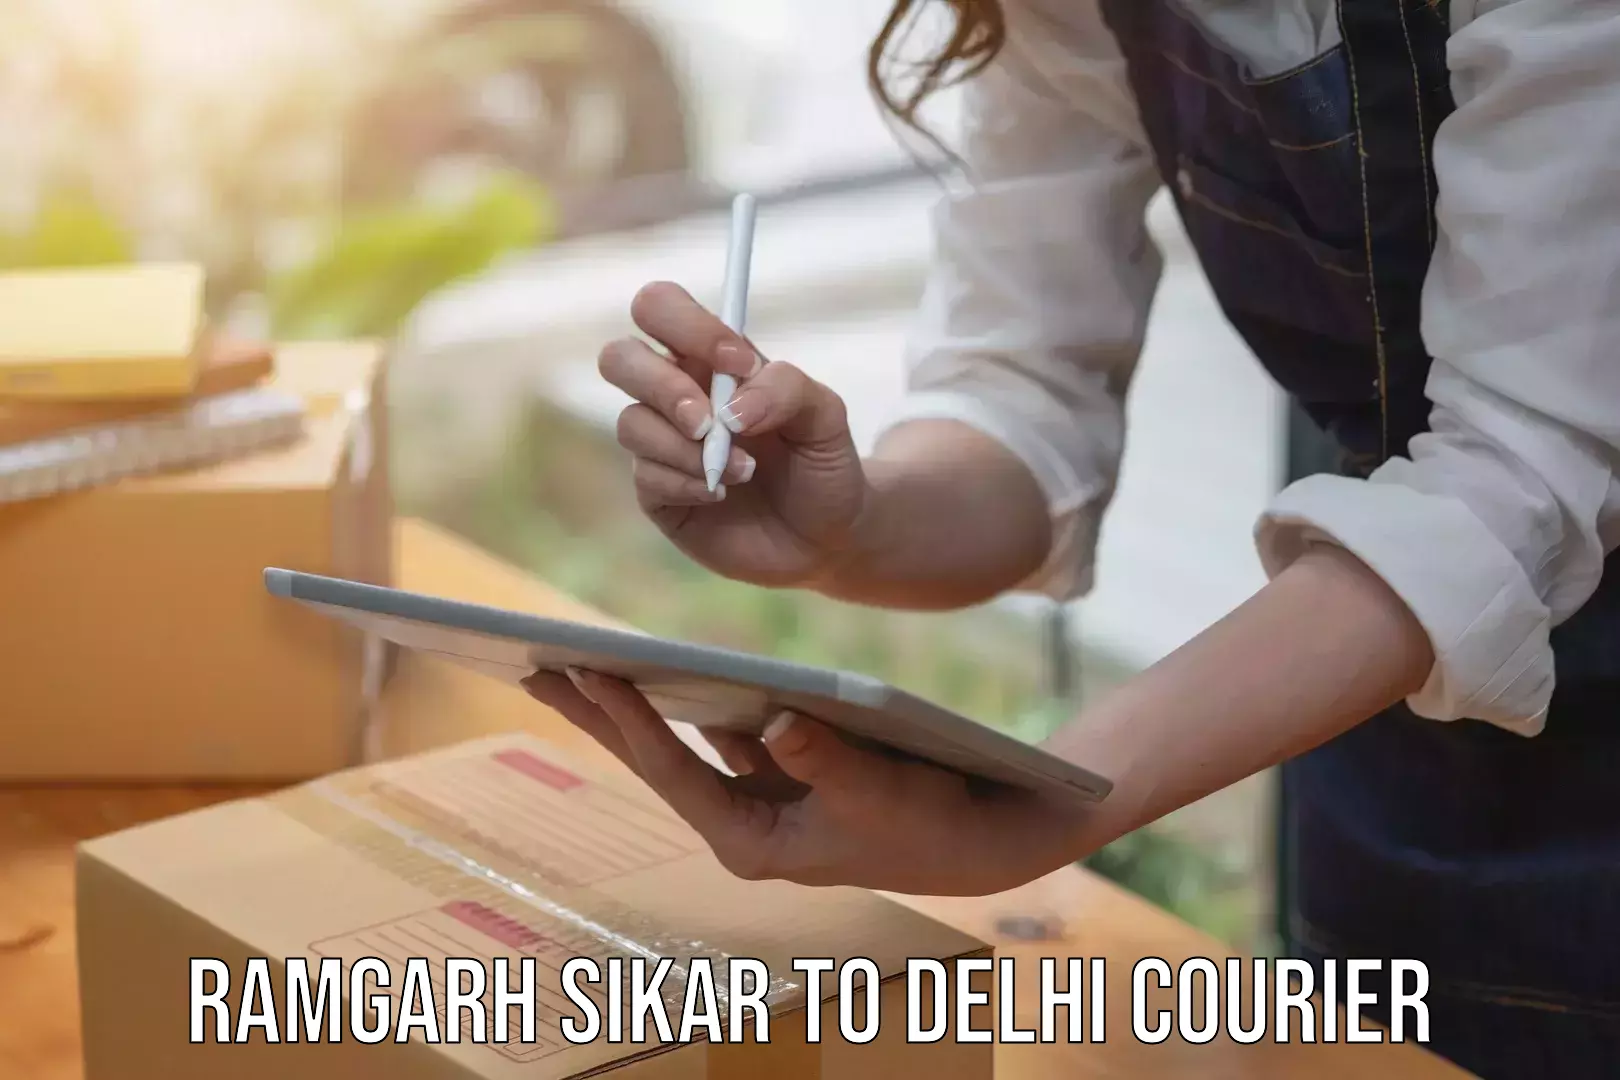 Efficient shipping operations Ramgarh Sikar to Jamia Millia Islamia New Delhi